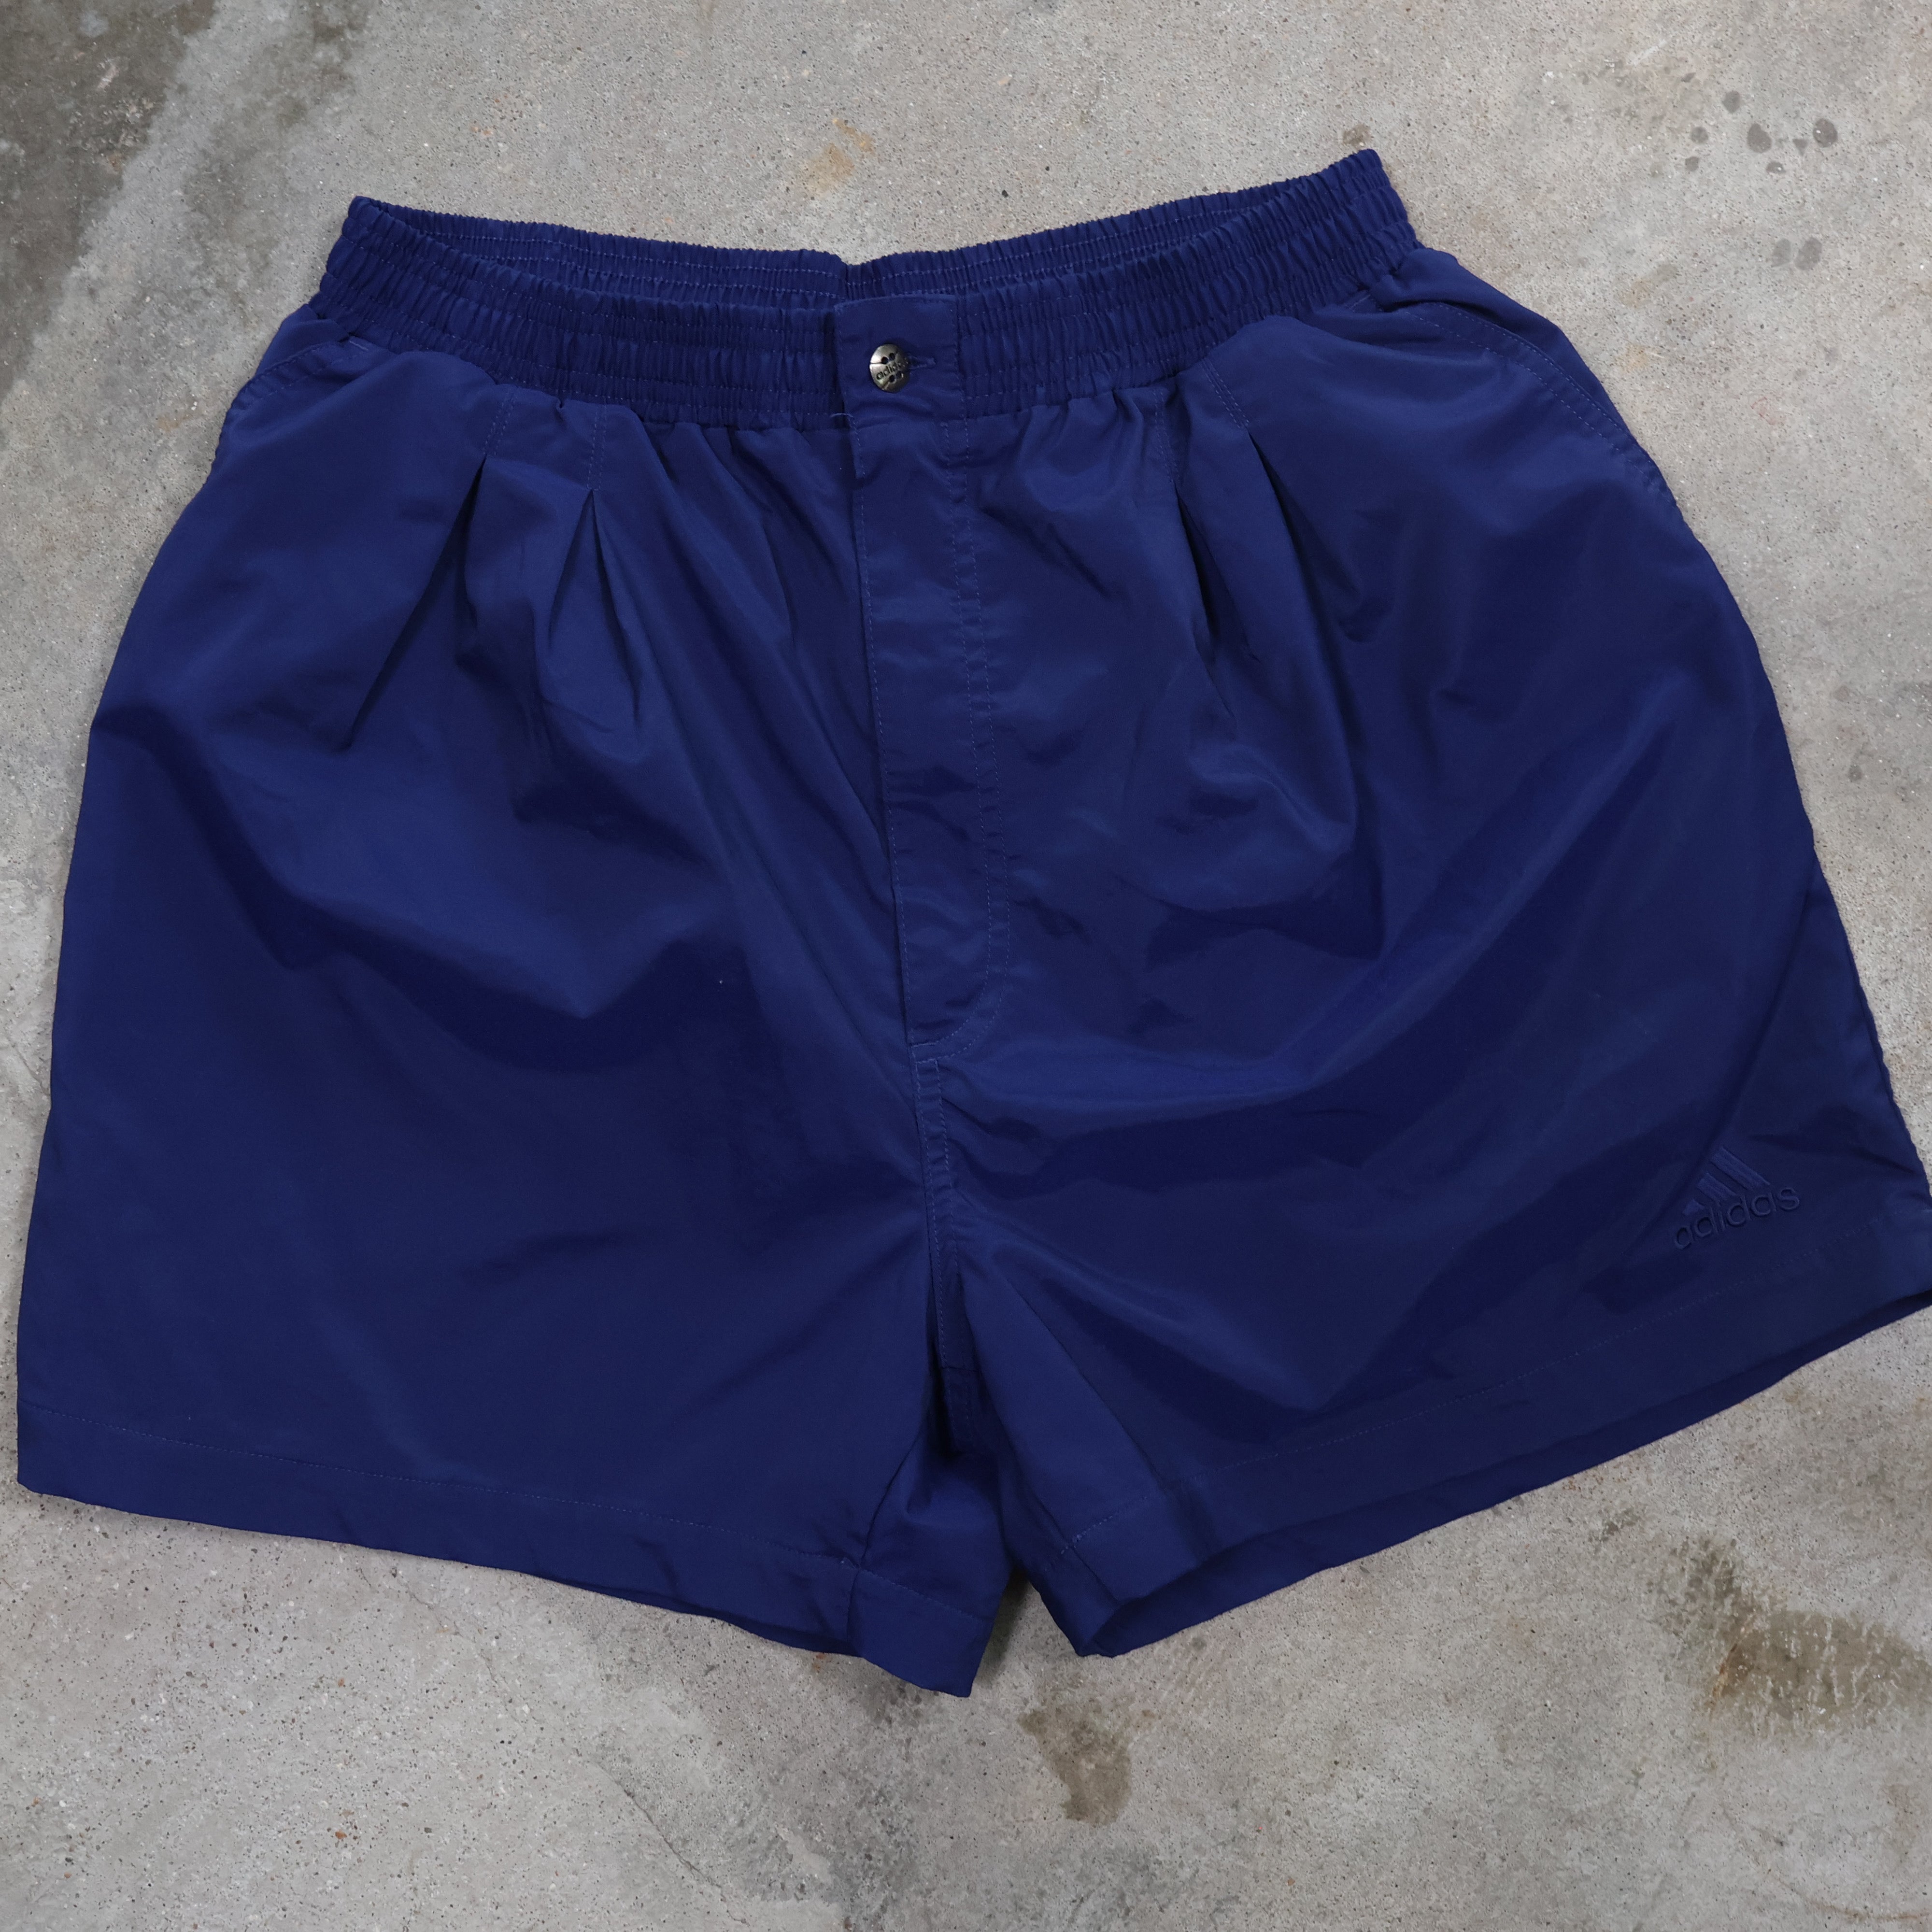 Navy Adidas Nylon Shorts 90s (Medium)